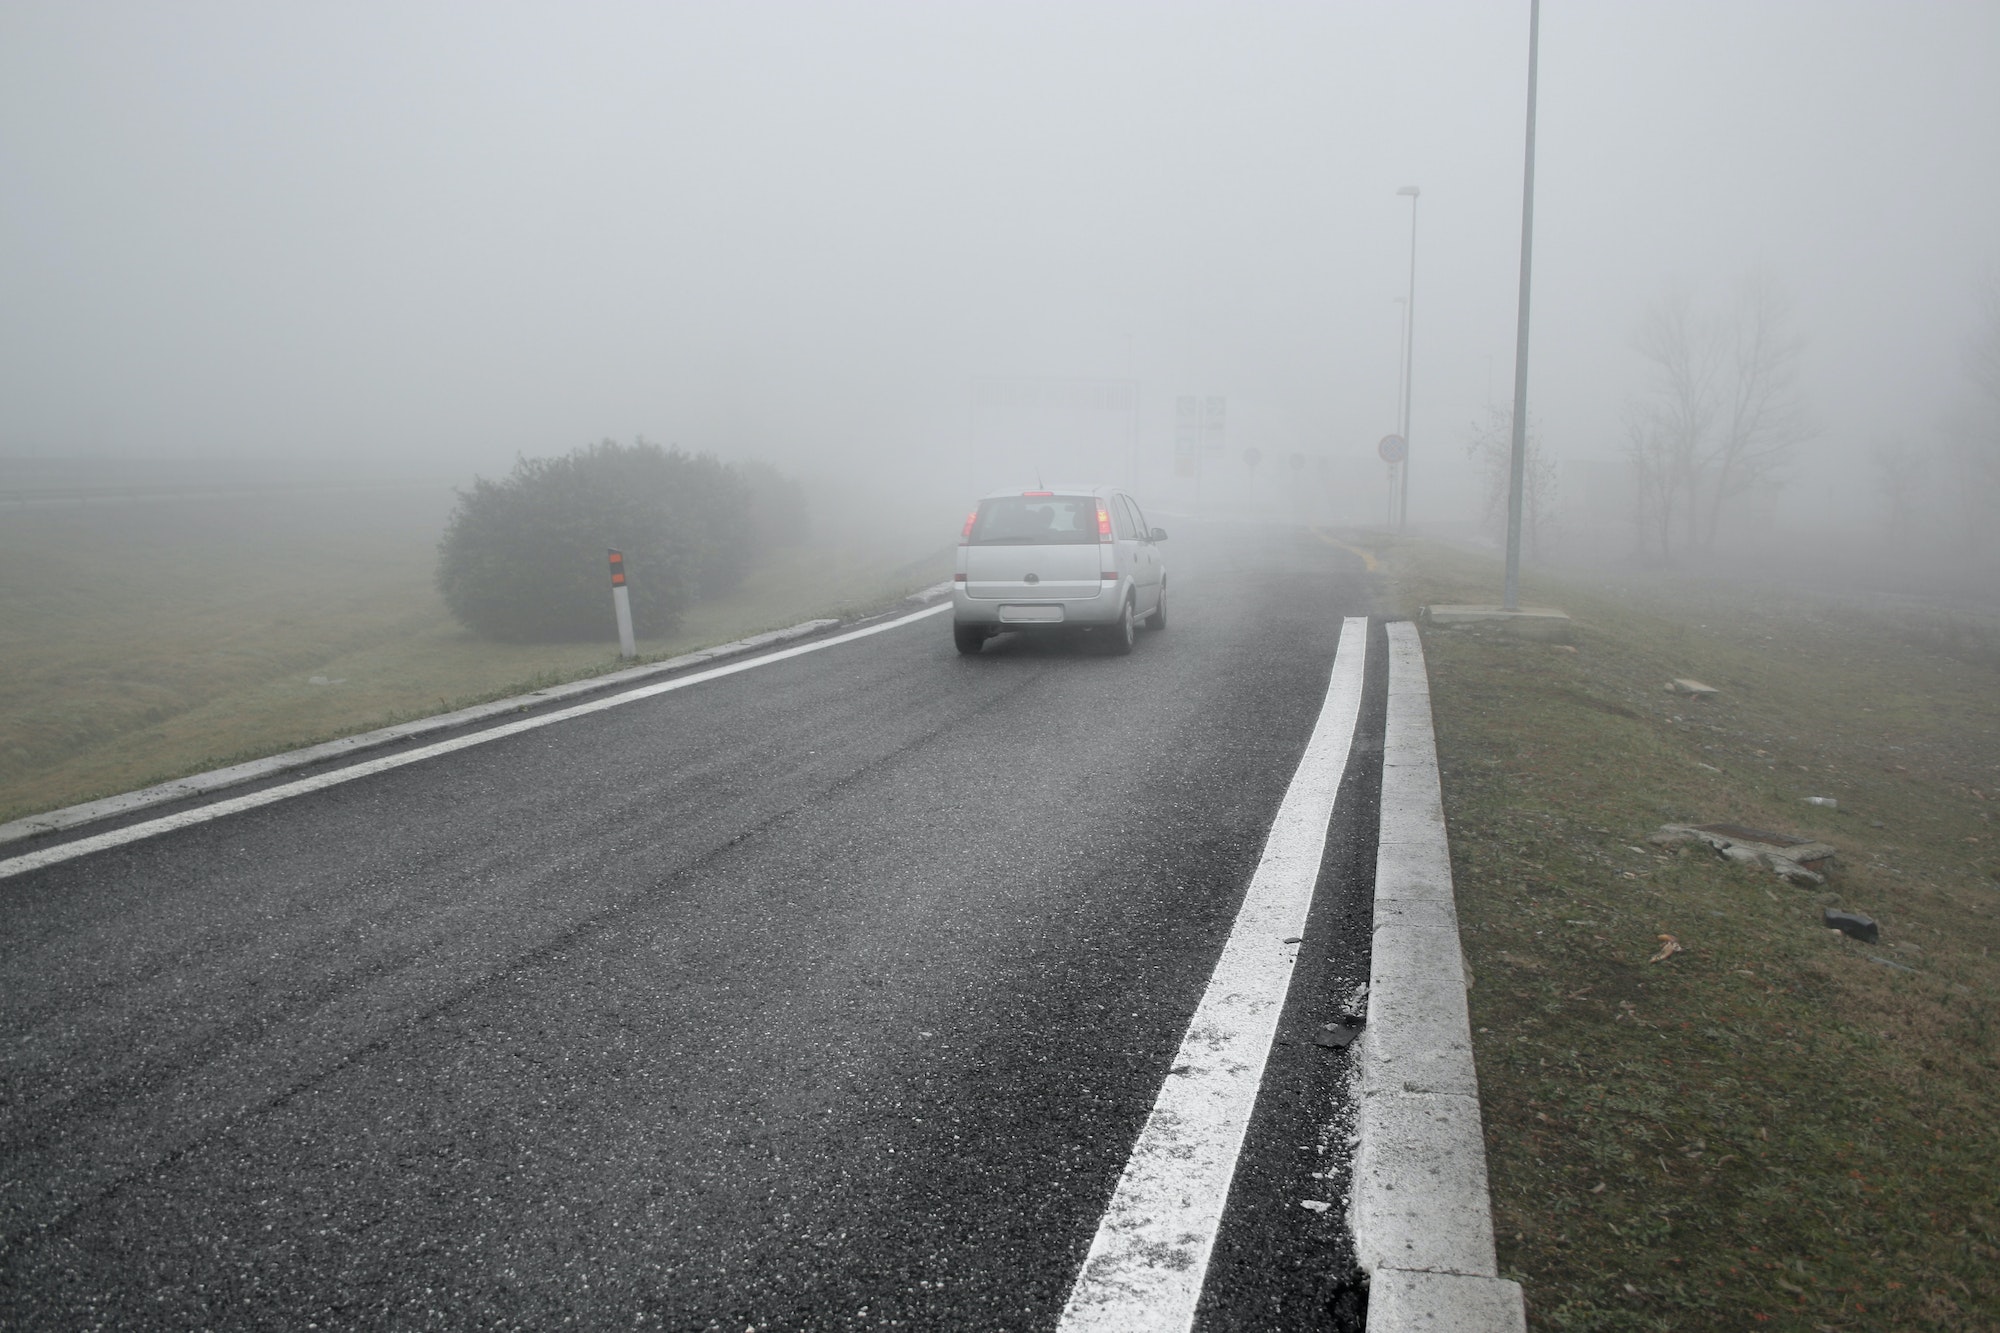 Conducir con niebla de forma segura